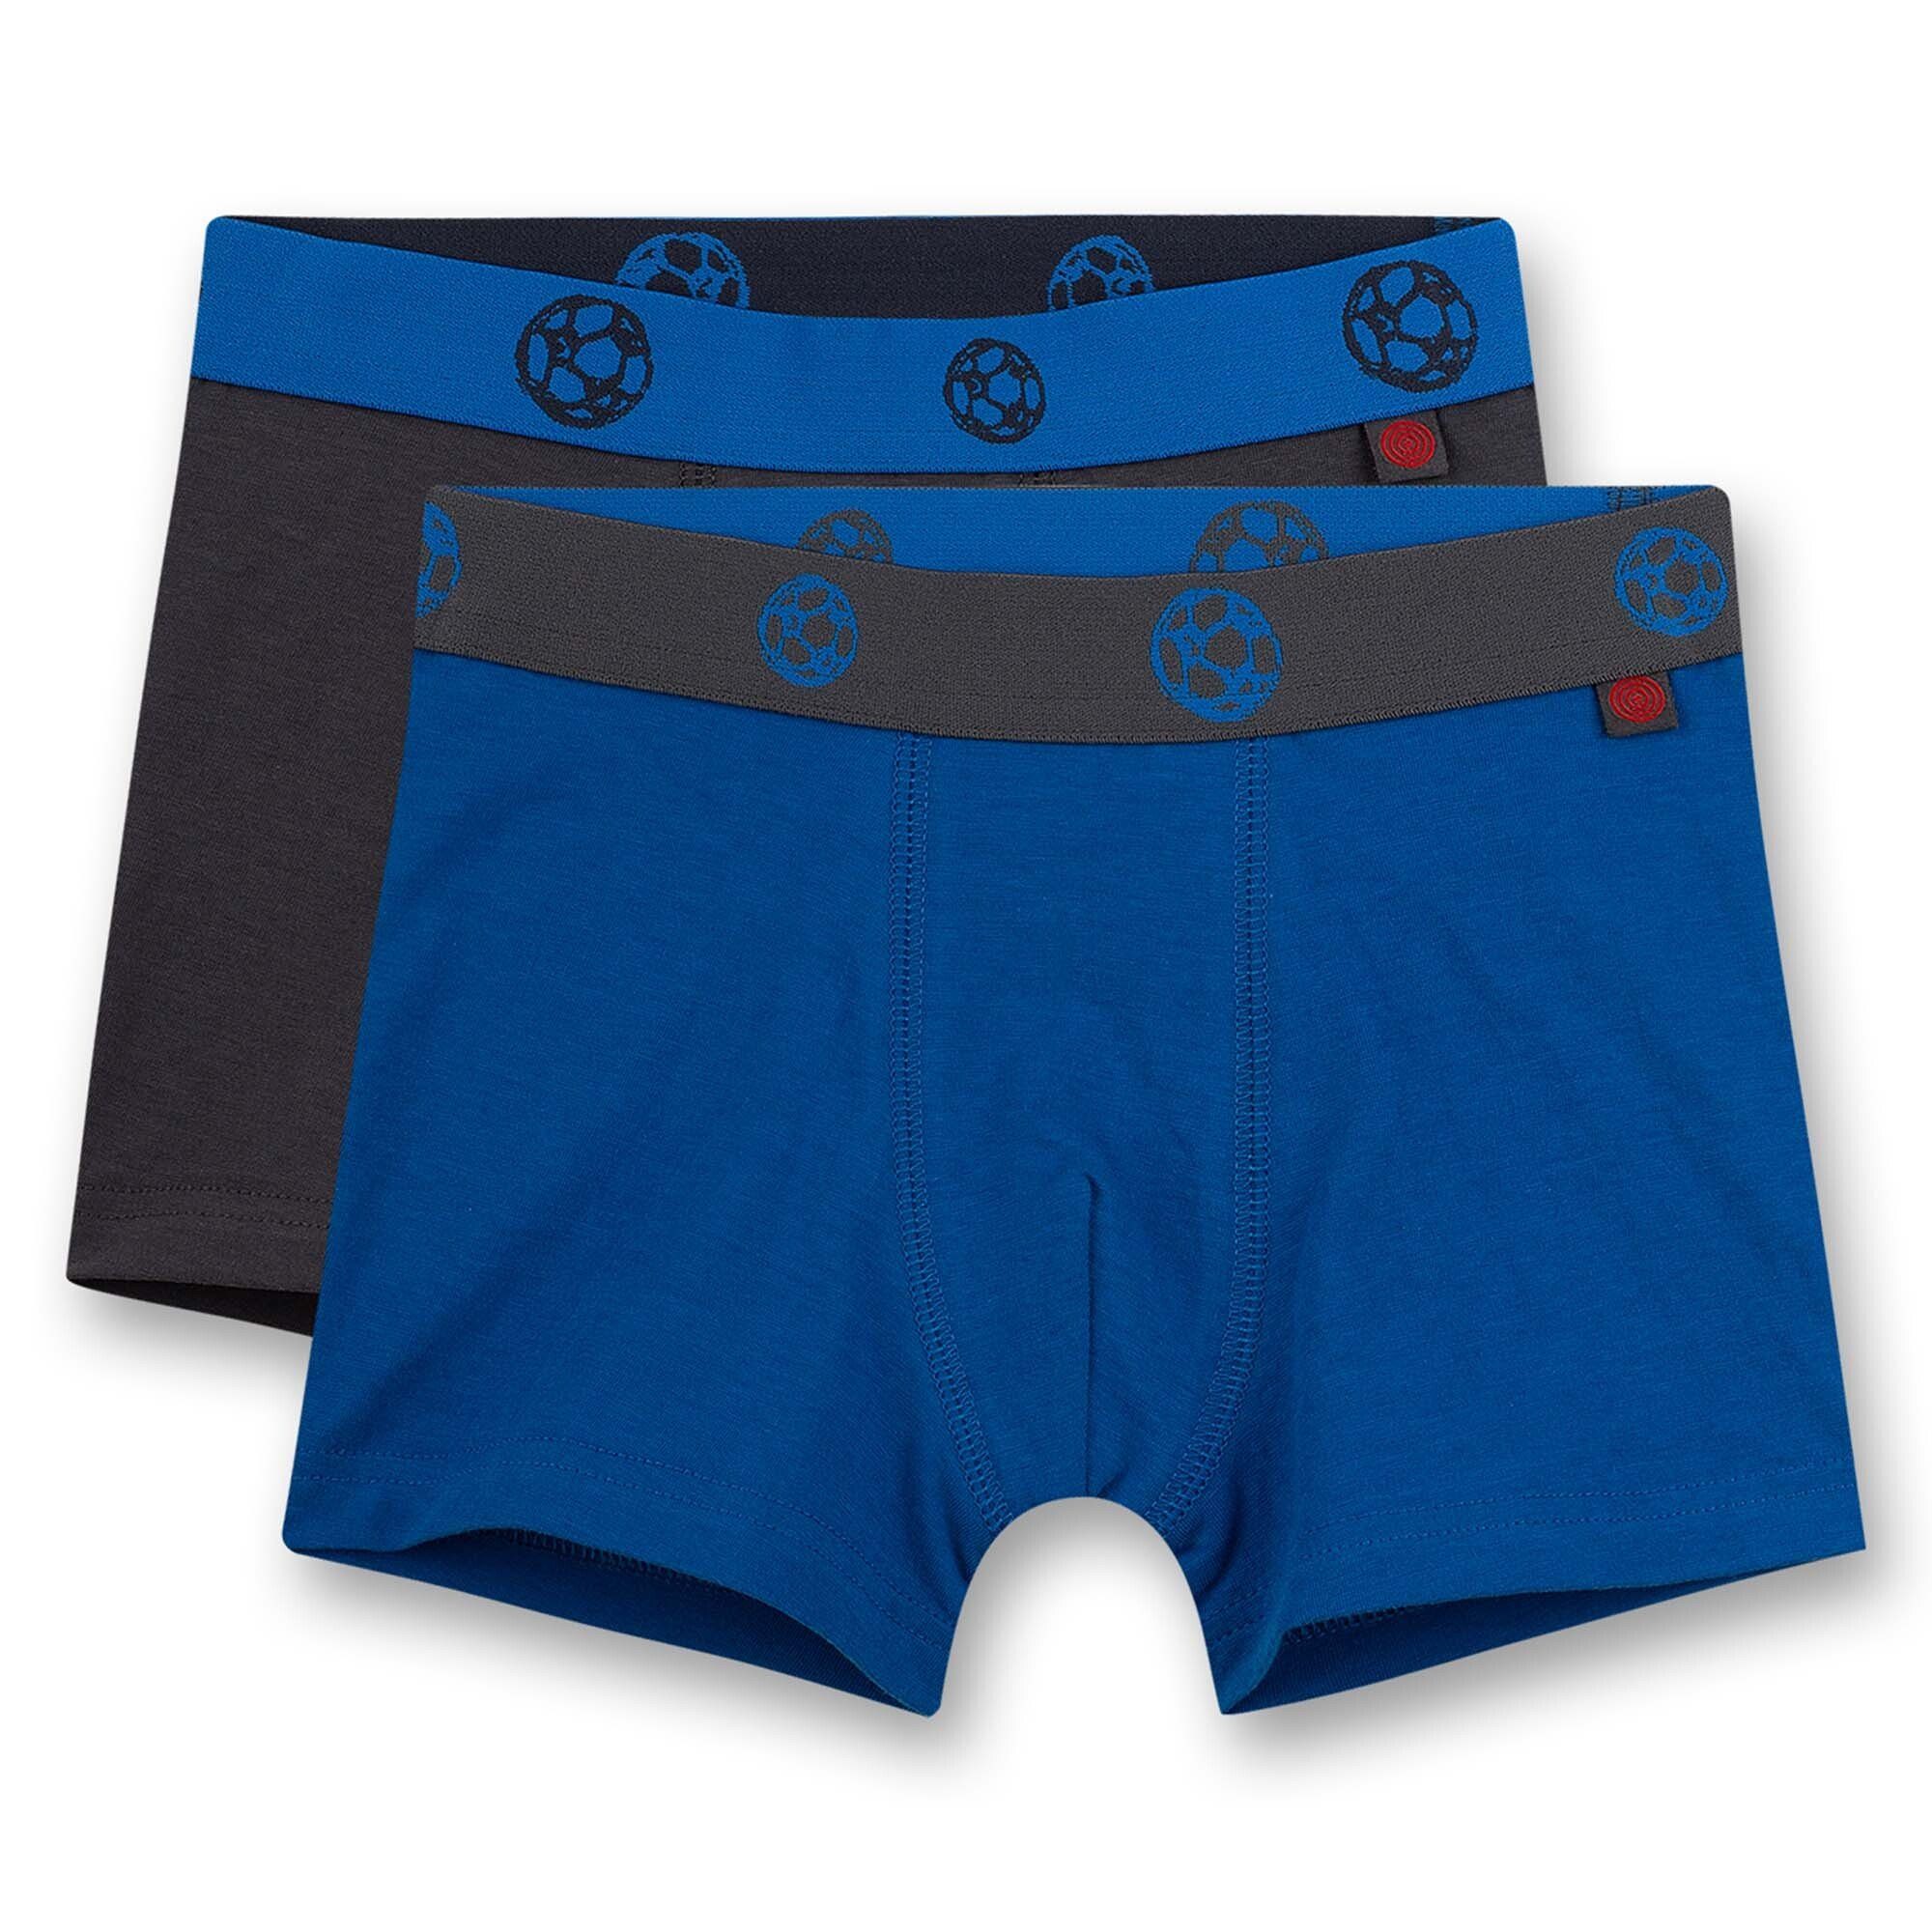 Sanetta Boxer Jungen Shorts, 2er Pack - Pants, Unterhosen